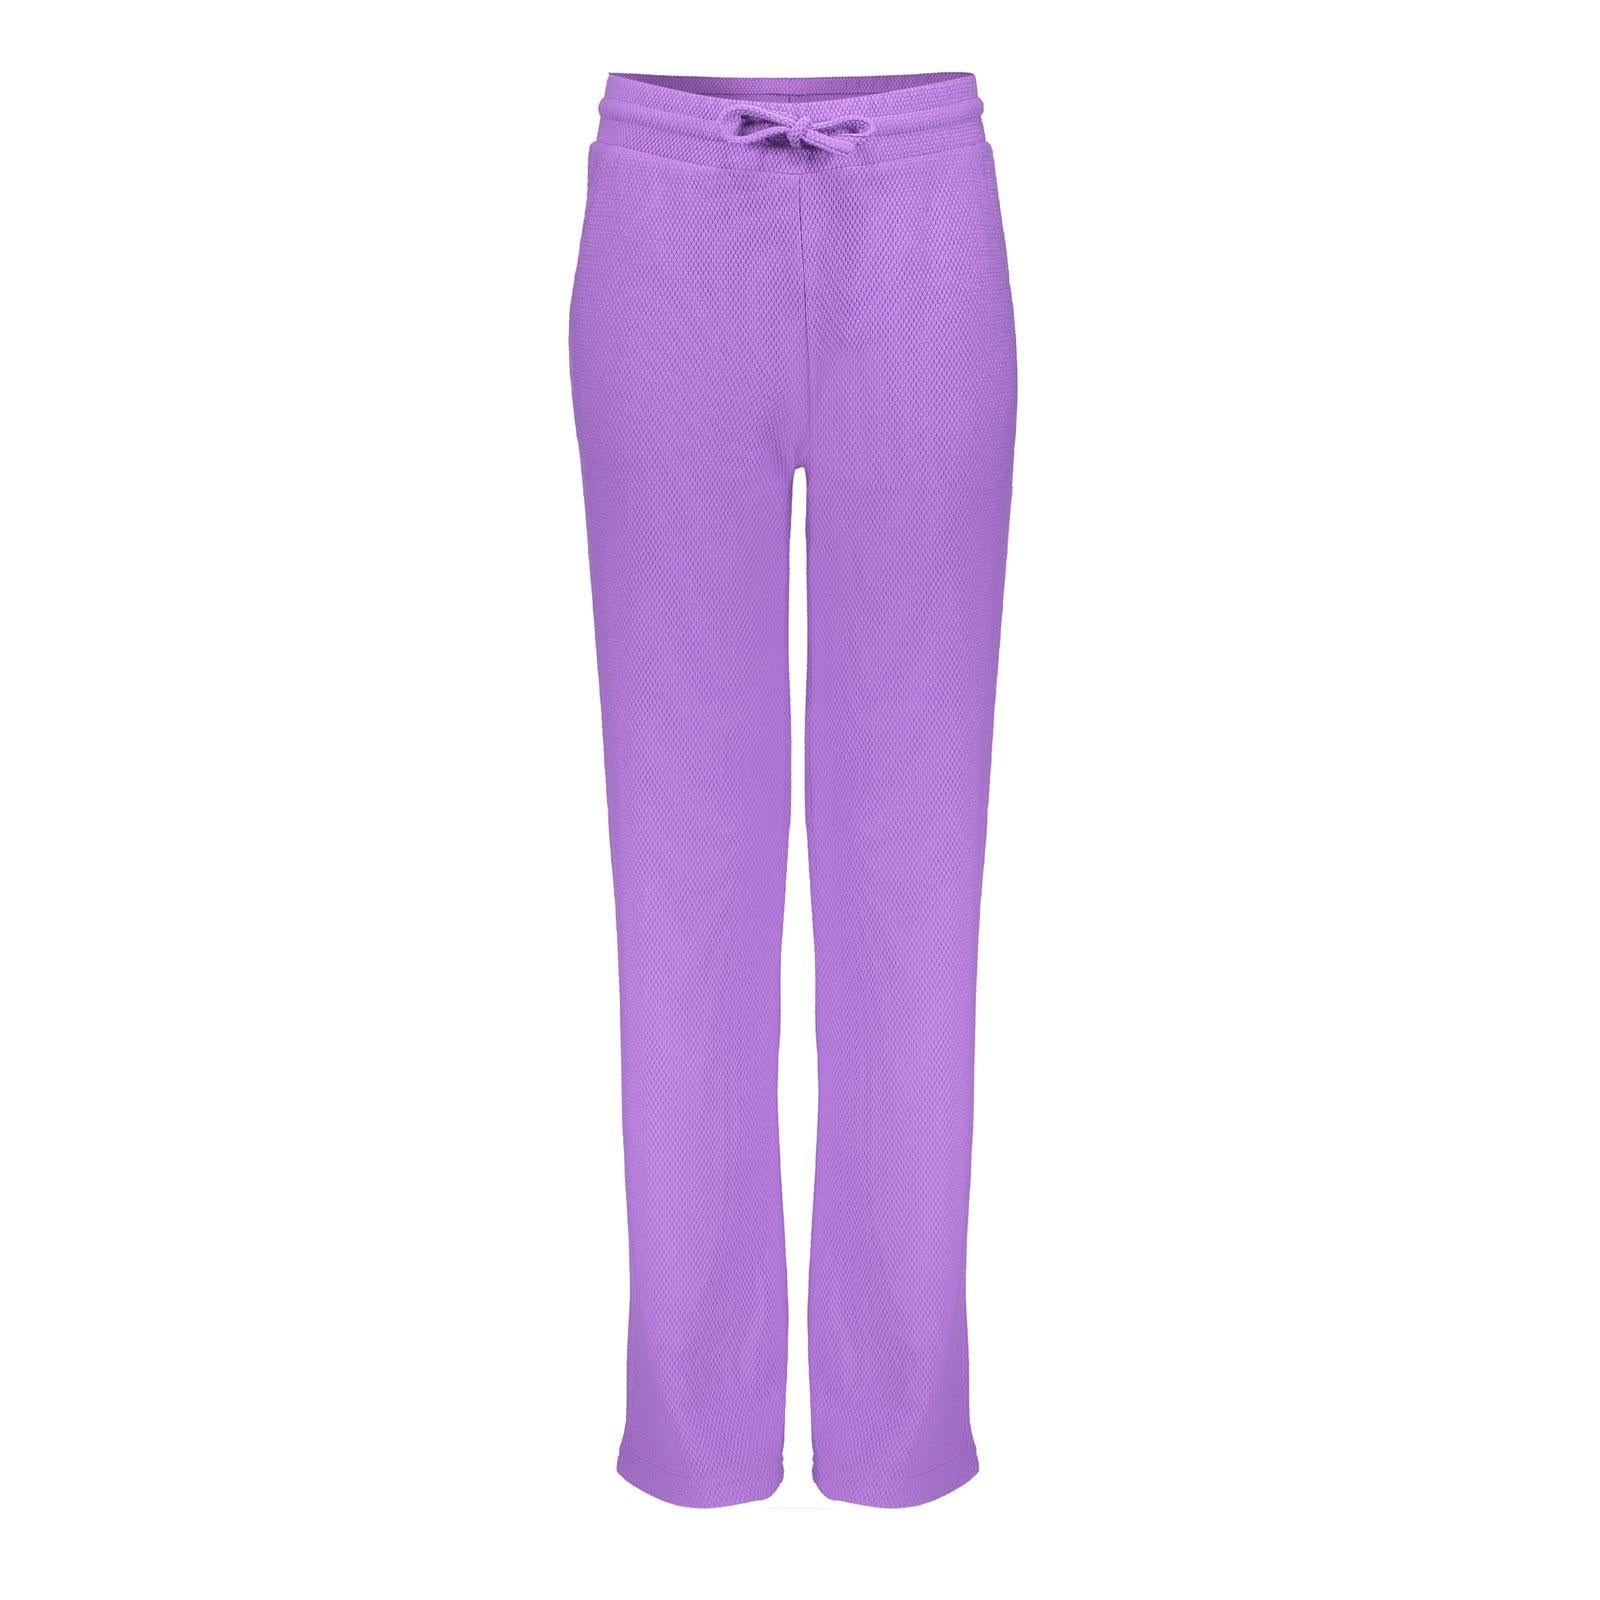 Meisjes Pants wide comfy  van Geisha in de kleur purple in maat 176.